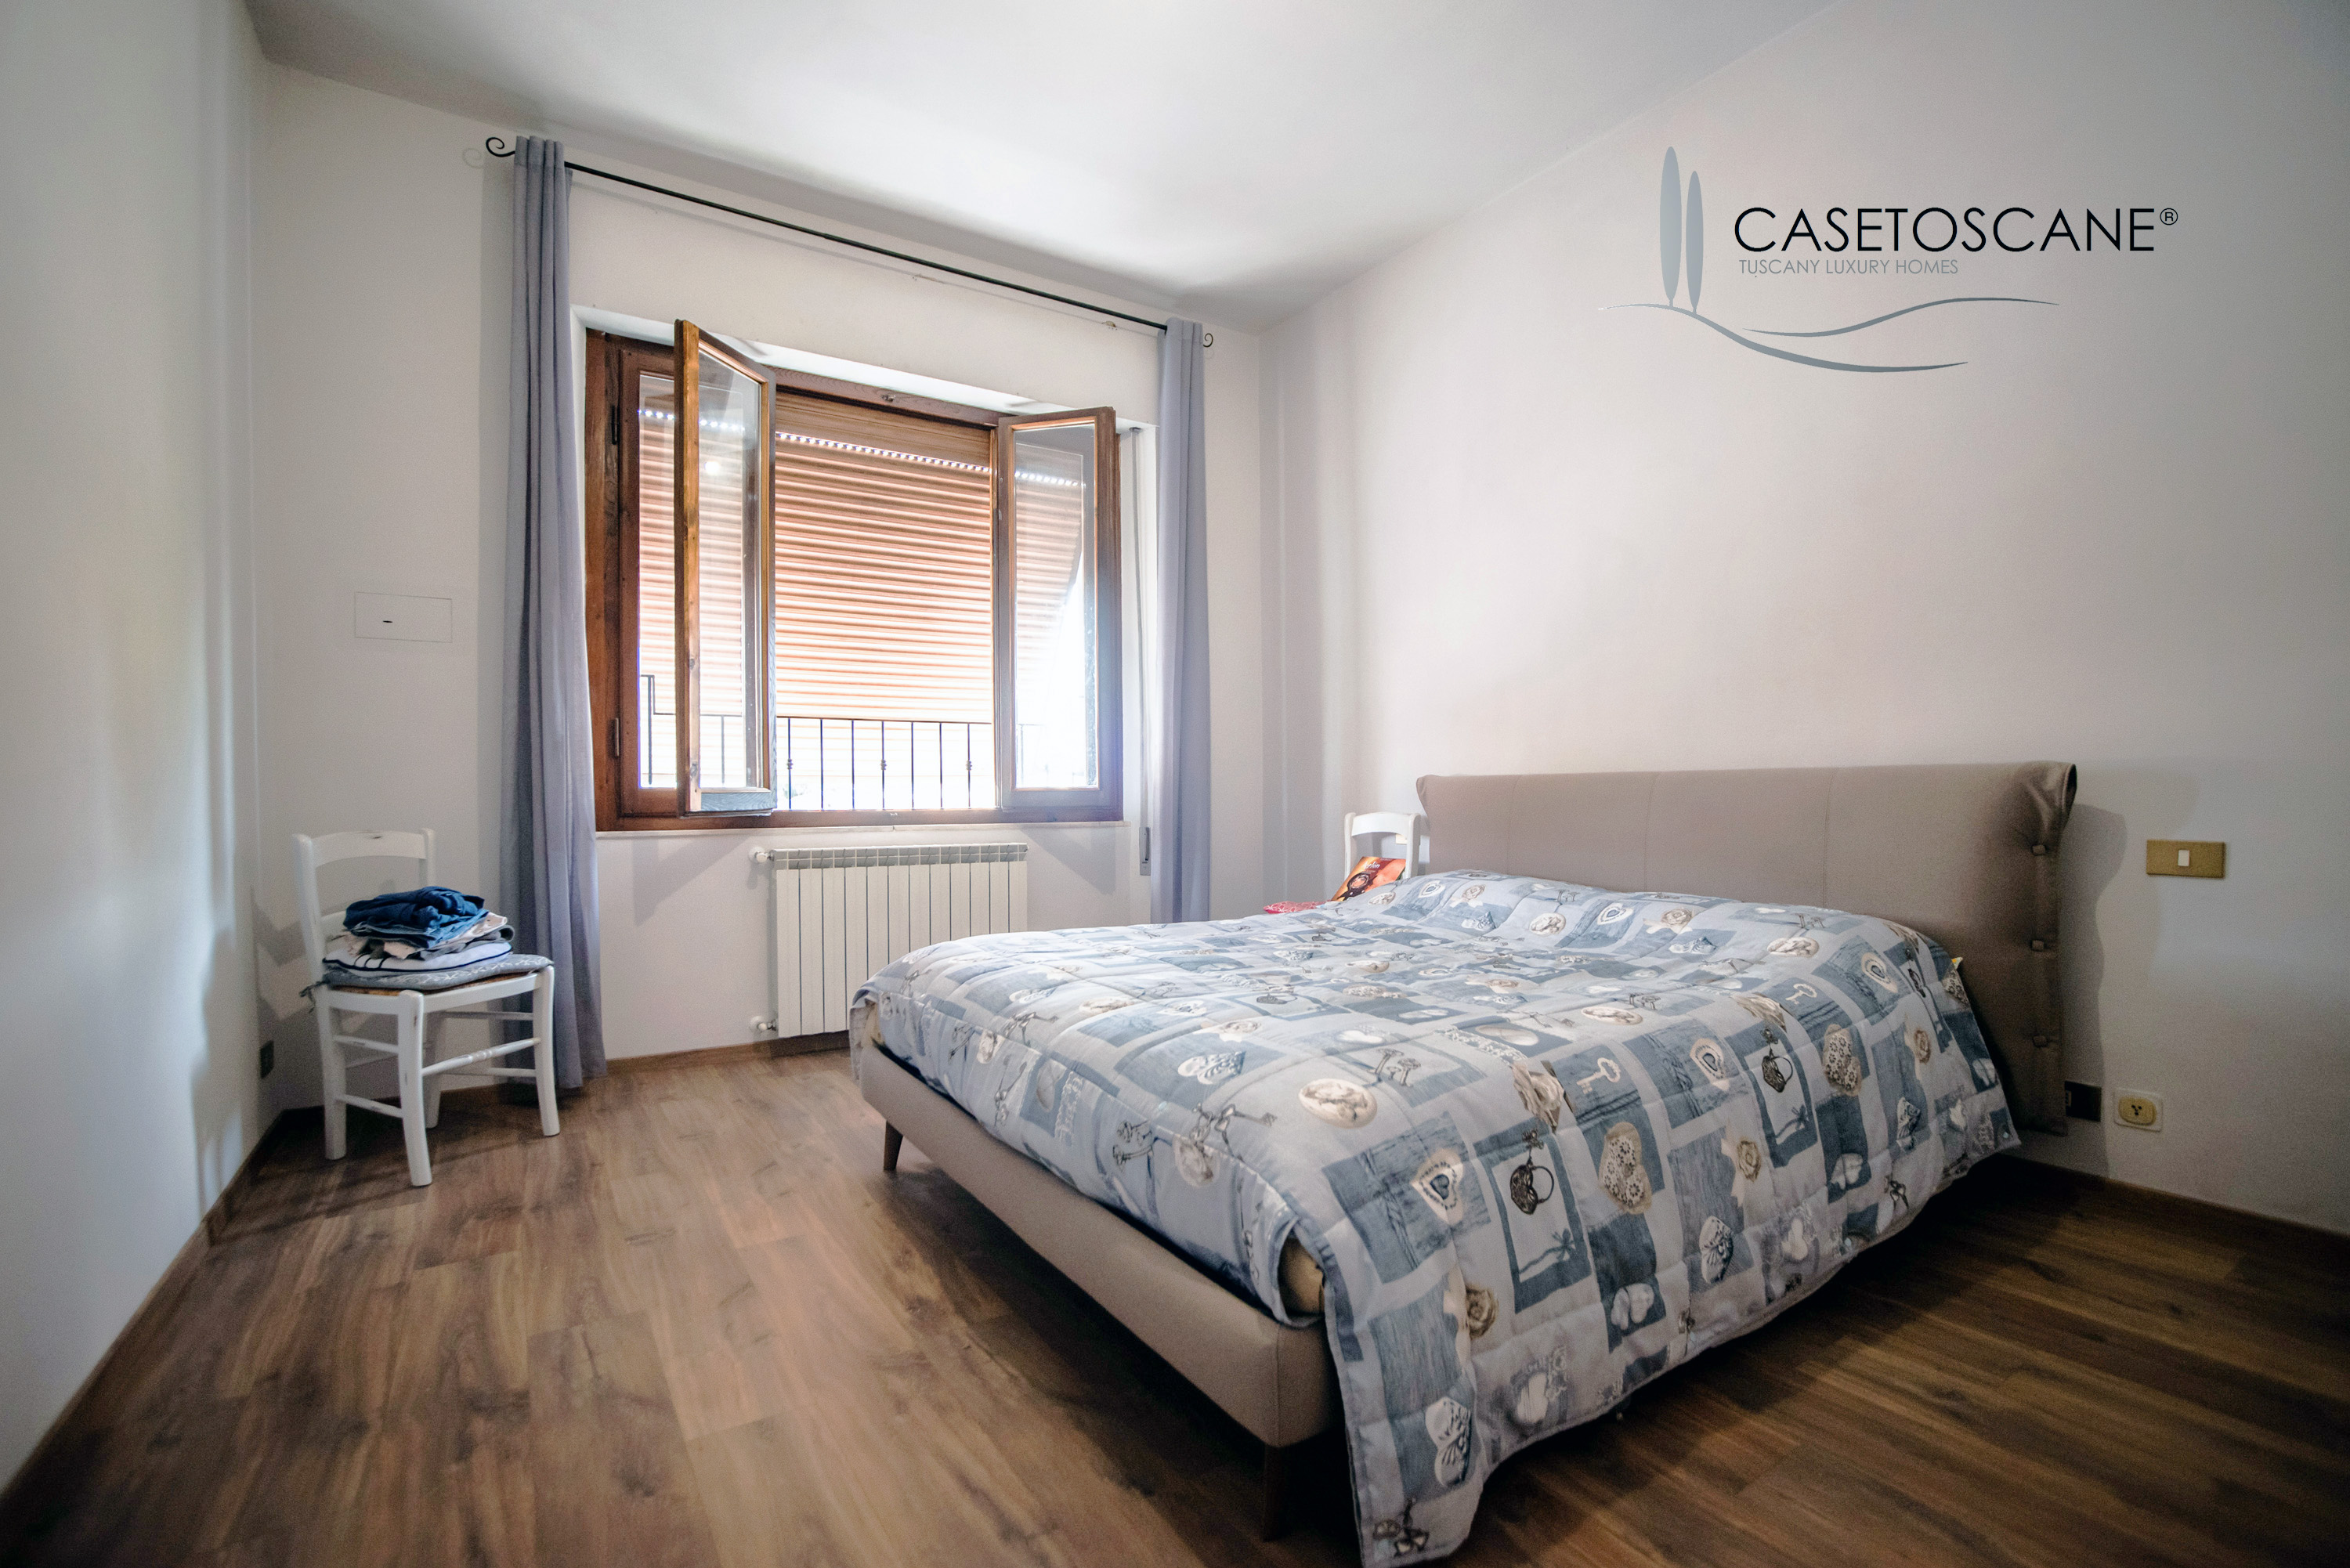 A707 - Ottimo appartamento ristrutturato di circa mq.90 posto al 2°P con affaccio diretto su Piazza Sant'Agostino nel centro storico di Arezzo.